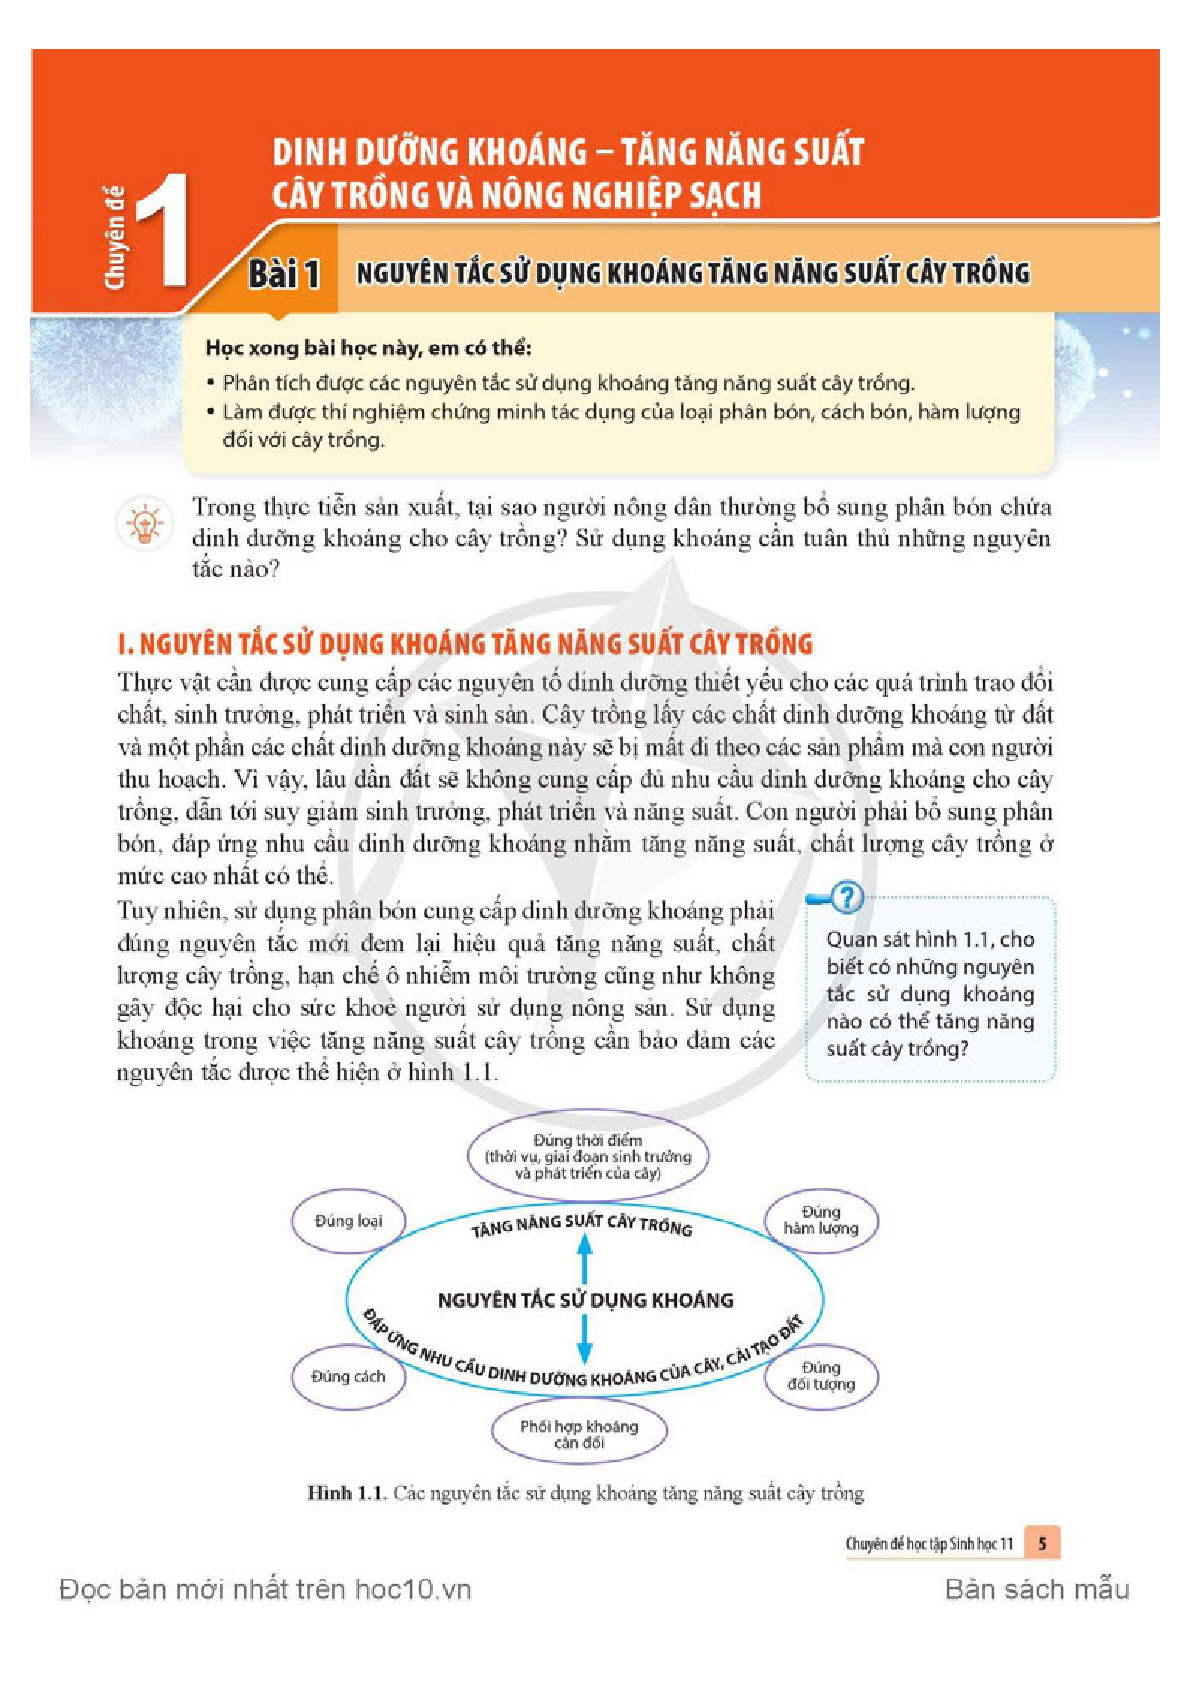 Chuyên đề học tập Sinh học 11 Cánh diều pdf (trang 6)